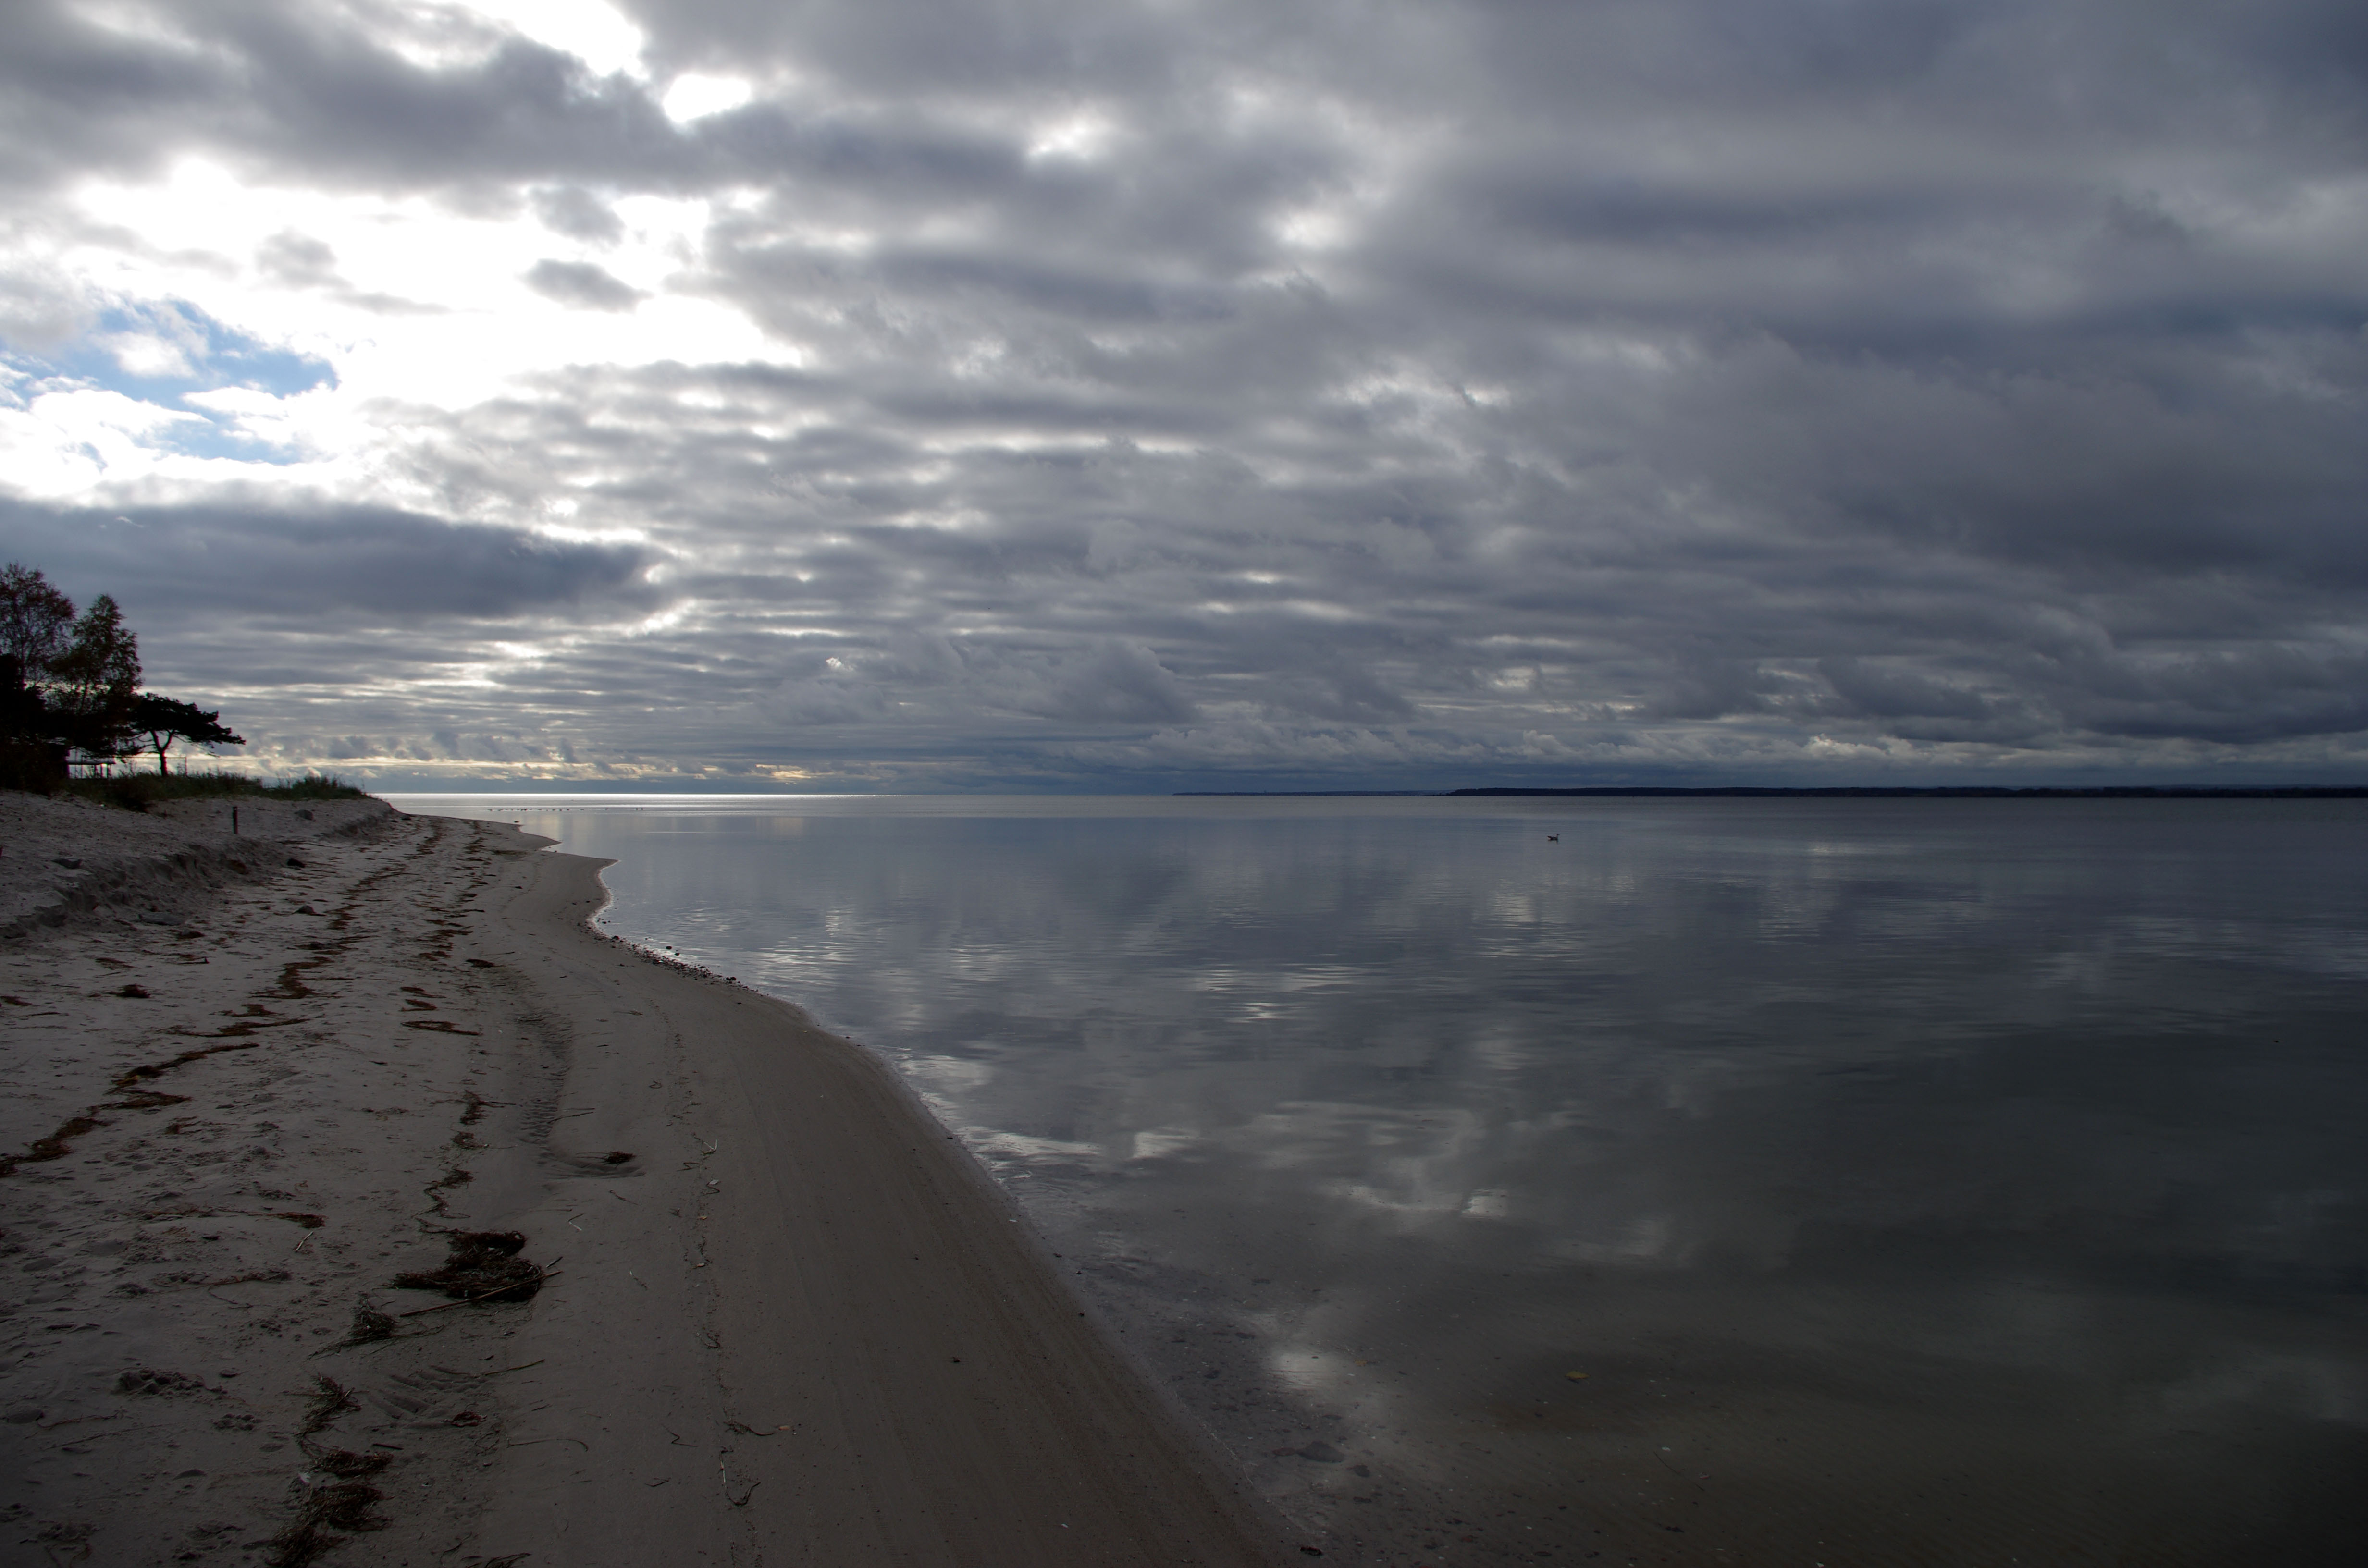 Na zdjęciu widać piaszczystą plażę graniczącą z dużą płytką zatoką należącą do morza Bałtyckiego.